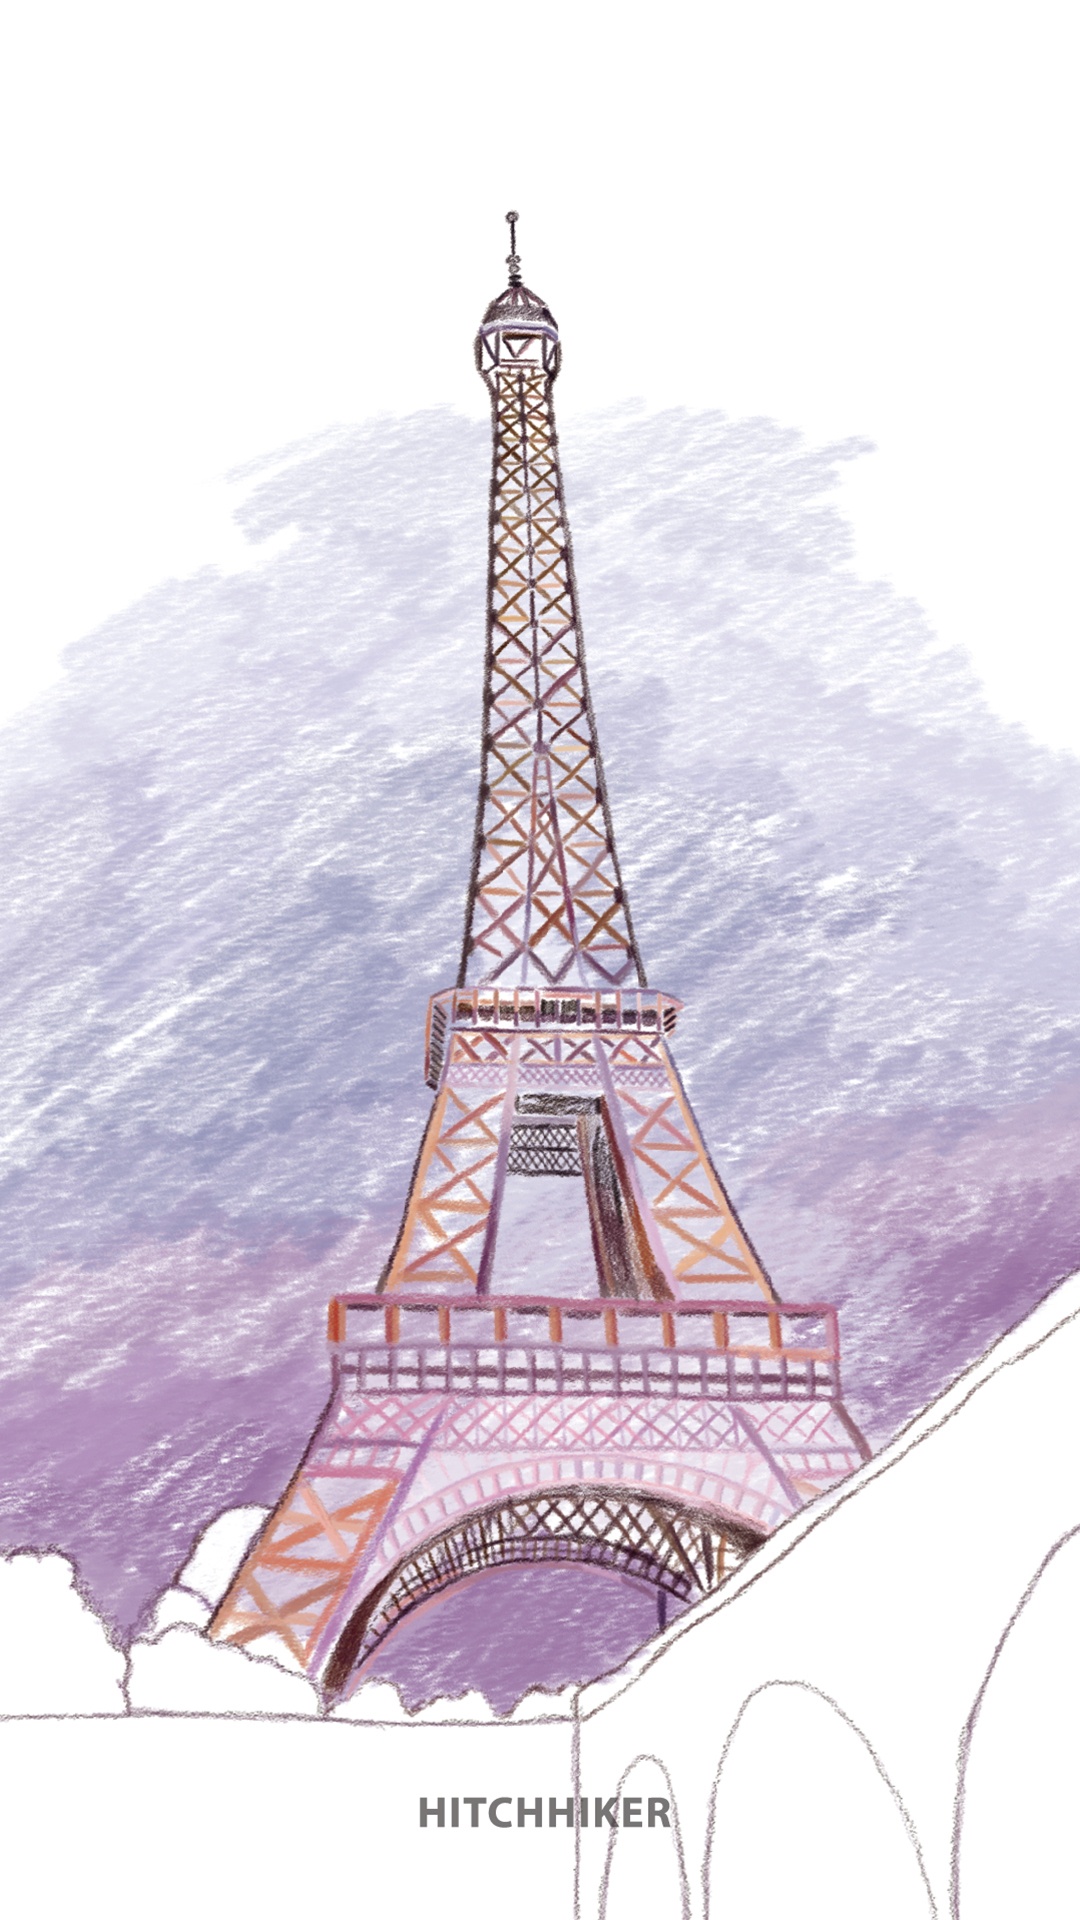 简约巴黎铁塔手绘壁纸大图-壁纸图片大全